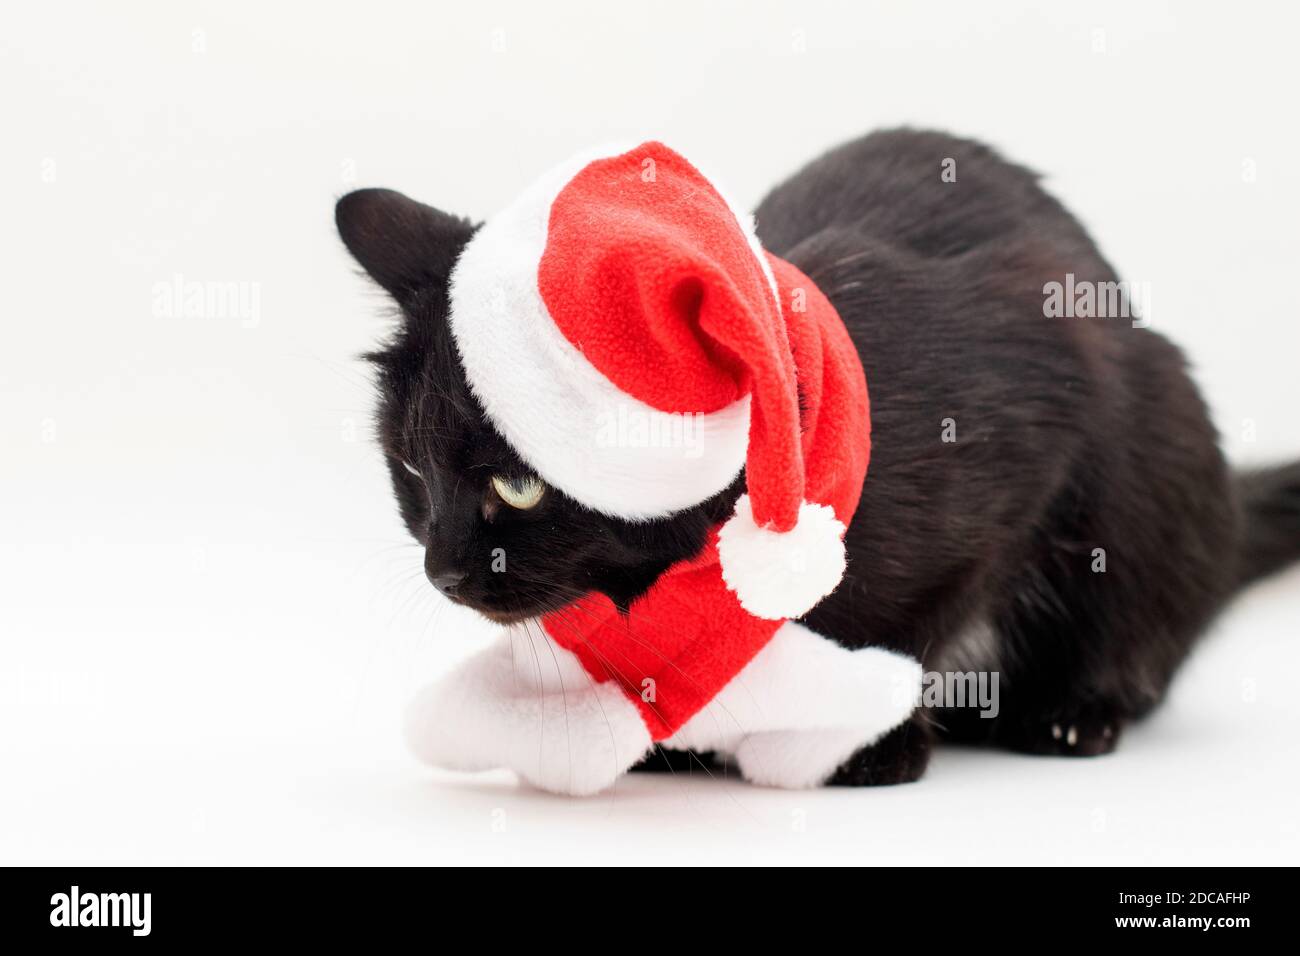 Schwarze Katze im Weihnachtsmann Kostüm. Weihnachtskleid und Weihnachtsmann  Hut auf schwarze Katze Stockfotografie - Alamy